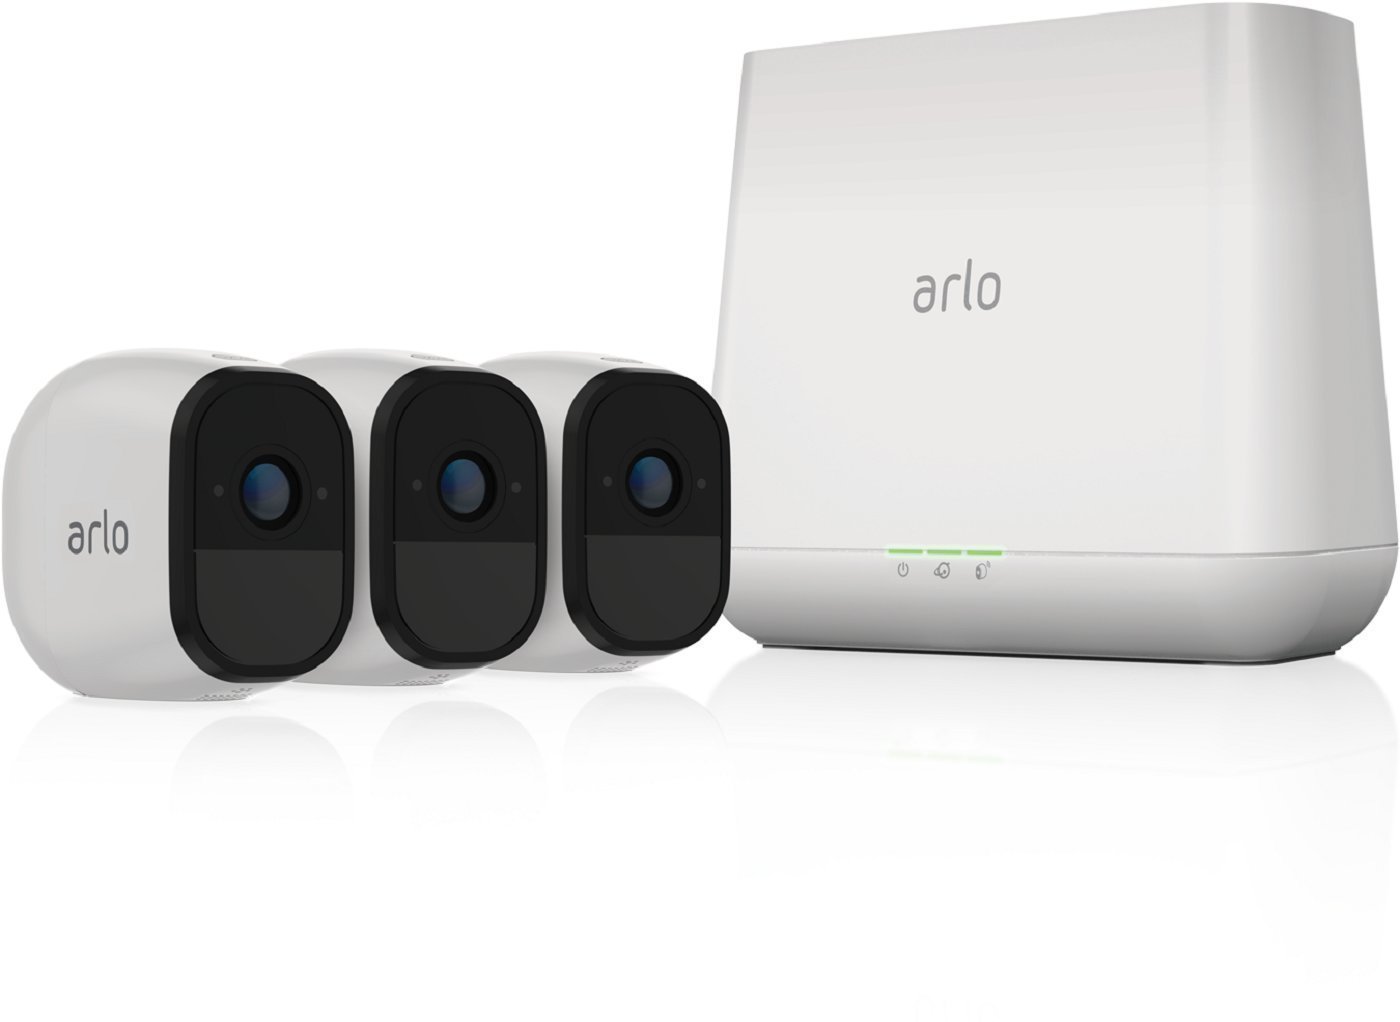 ARLO DAYS - Promozione Sistema di Videosorveglianza